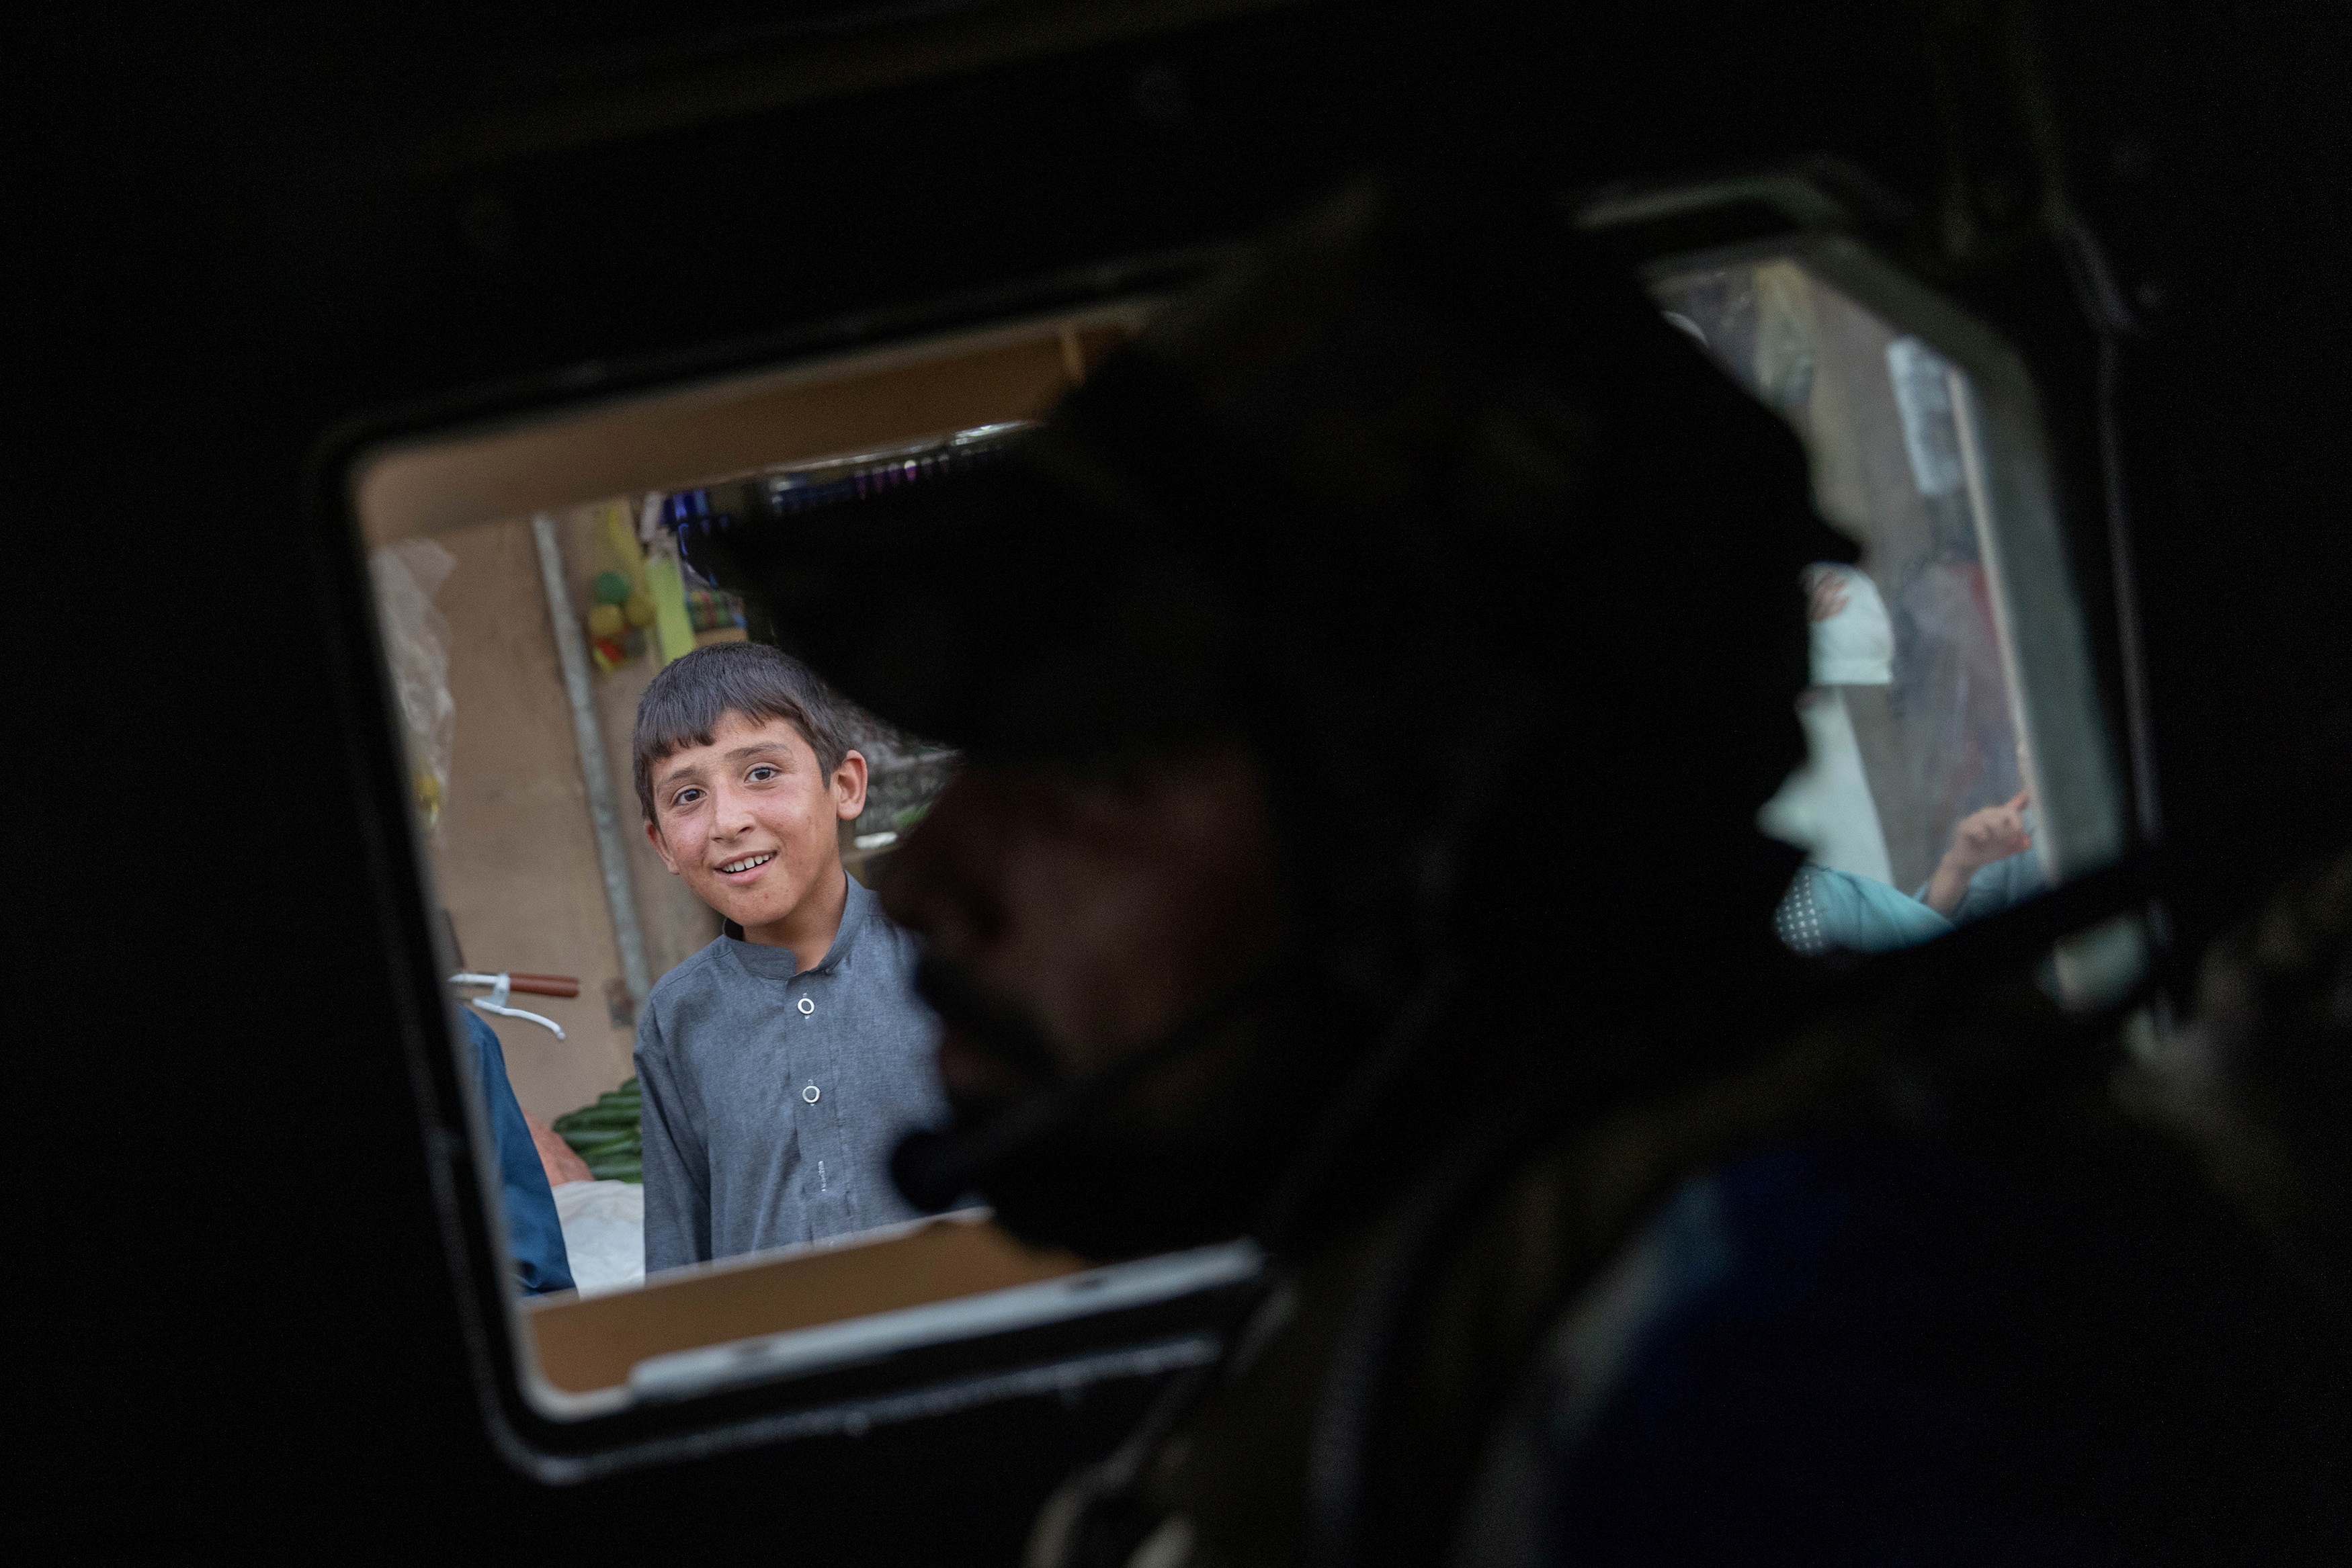 Un niño observa cómo el convoy de las fuerzas especiales afganas pasa por un mercado durante una misión de combate contra los talibanes, en la provincia de Kandahar, Afganistán, el 12 de julio de 2021. Foto tomada el 12 de julio de 2021. 